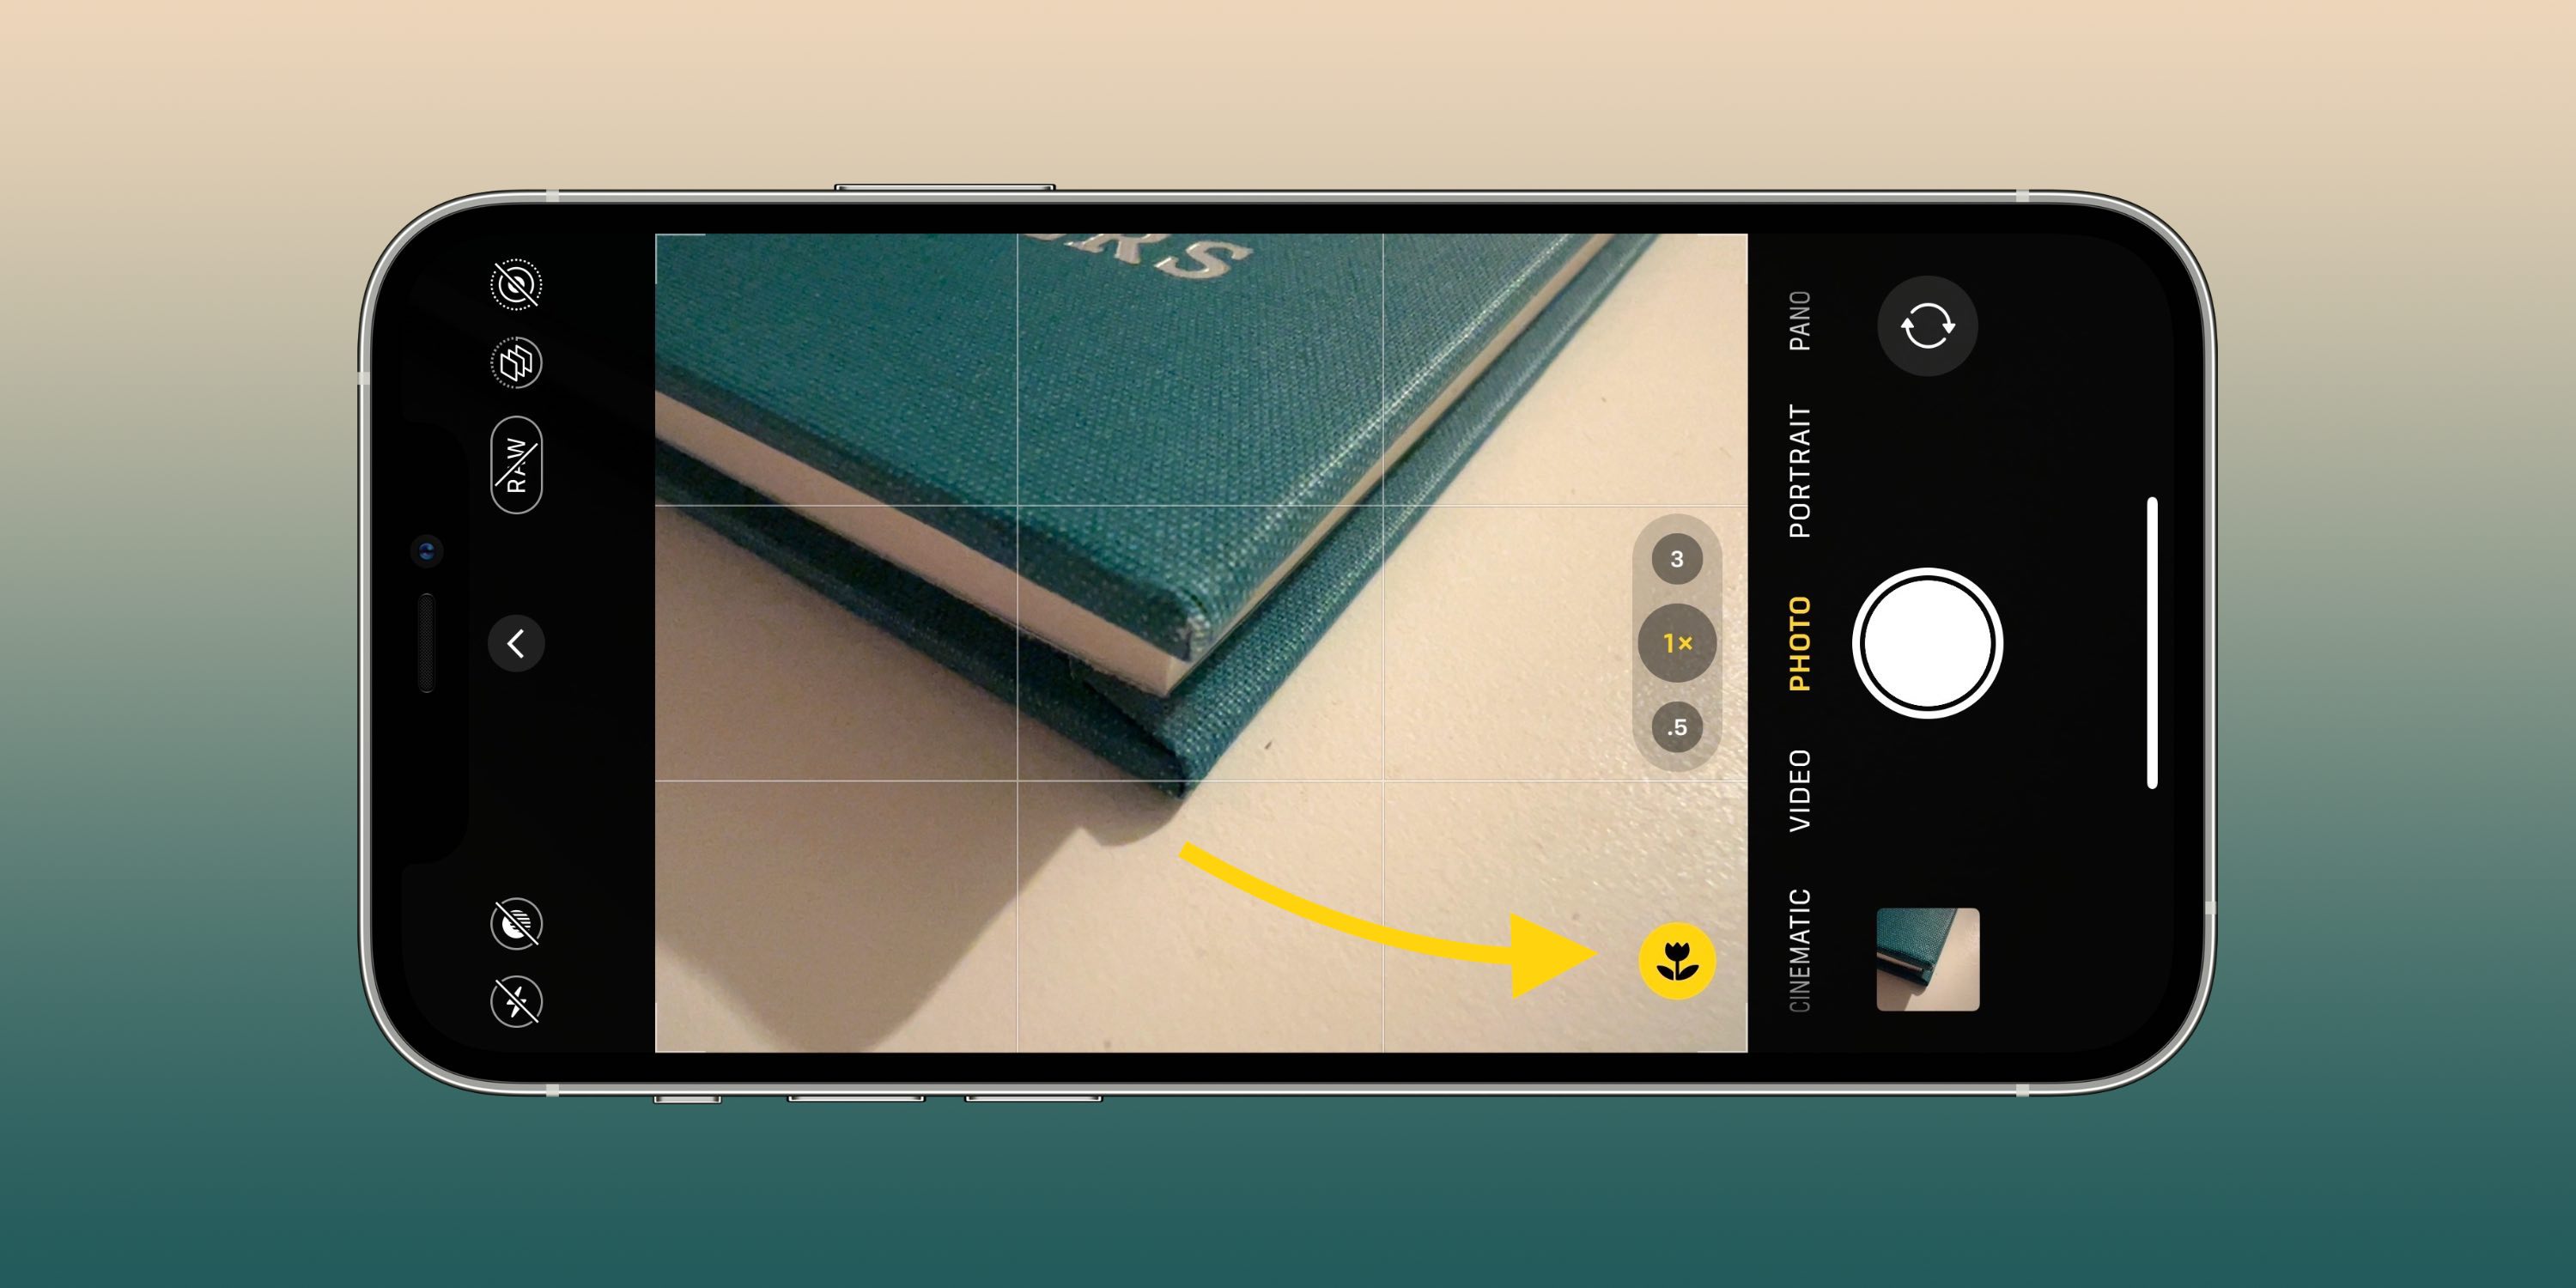 Queste impostazioni della fotocamera possono aiutarti a scattare foto e video migliori sul tuo iPhone